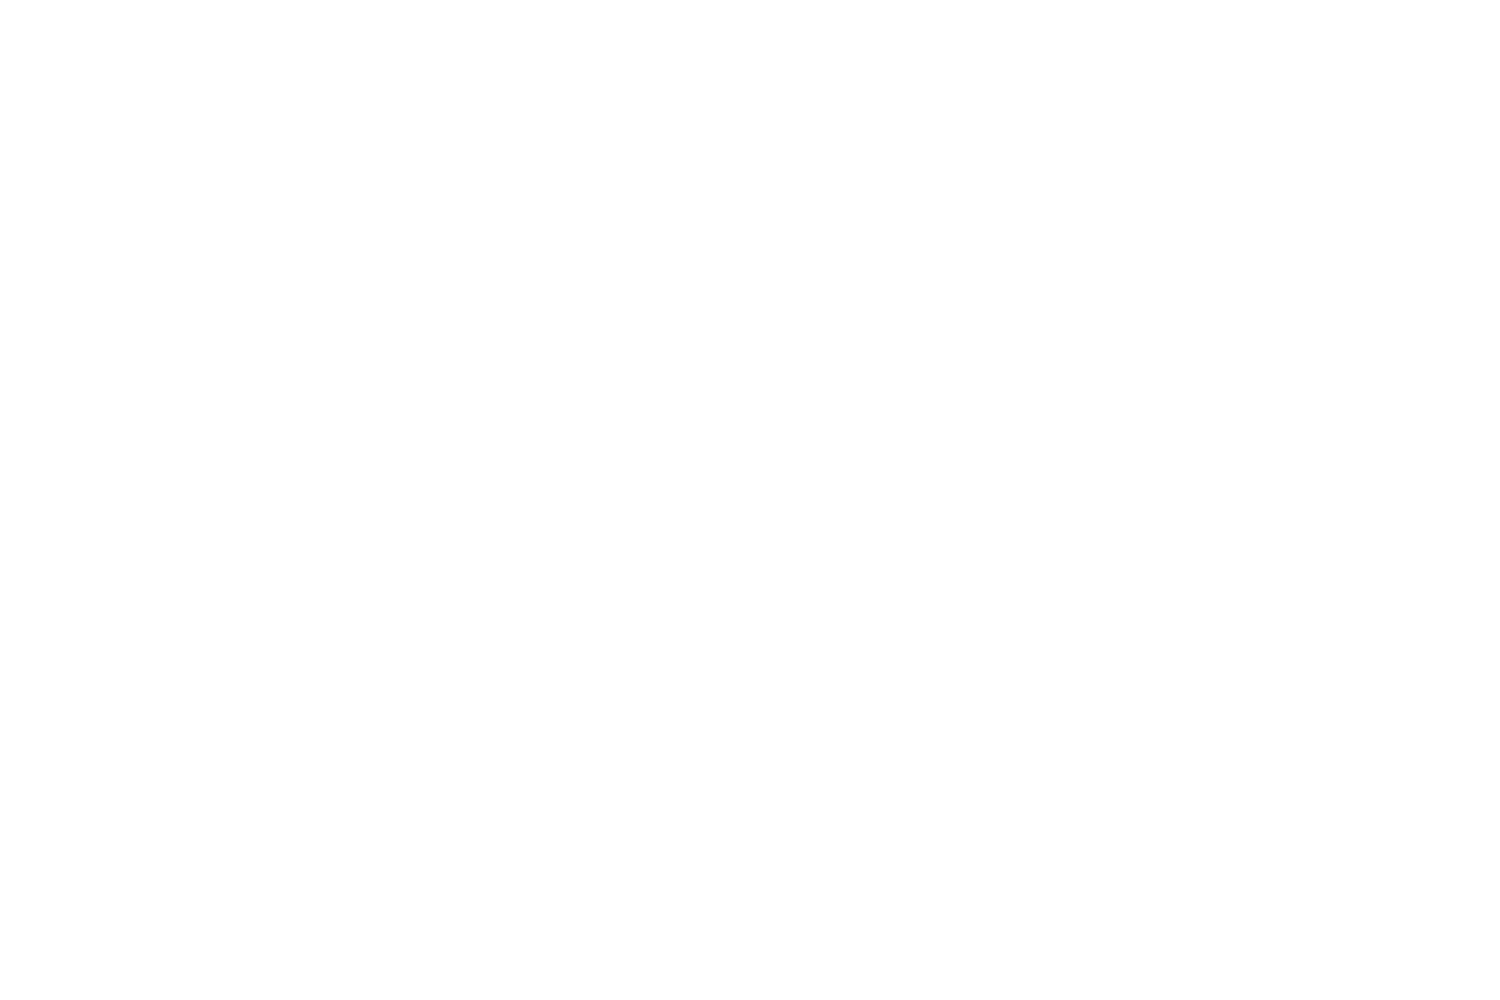 Olé